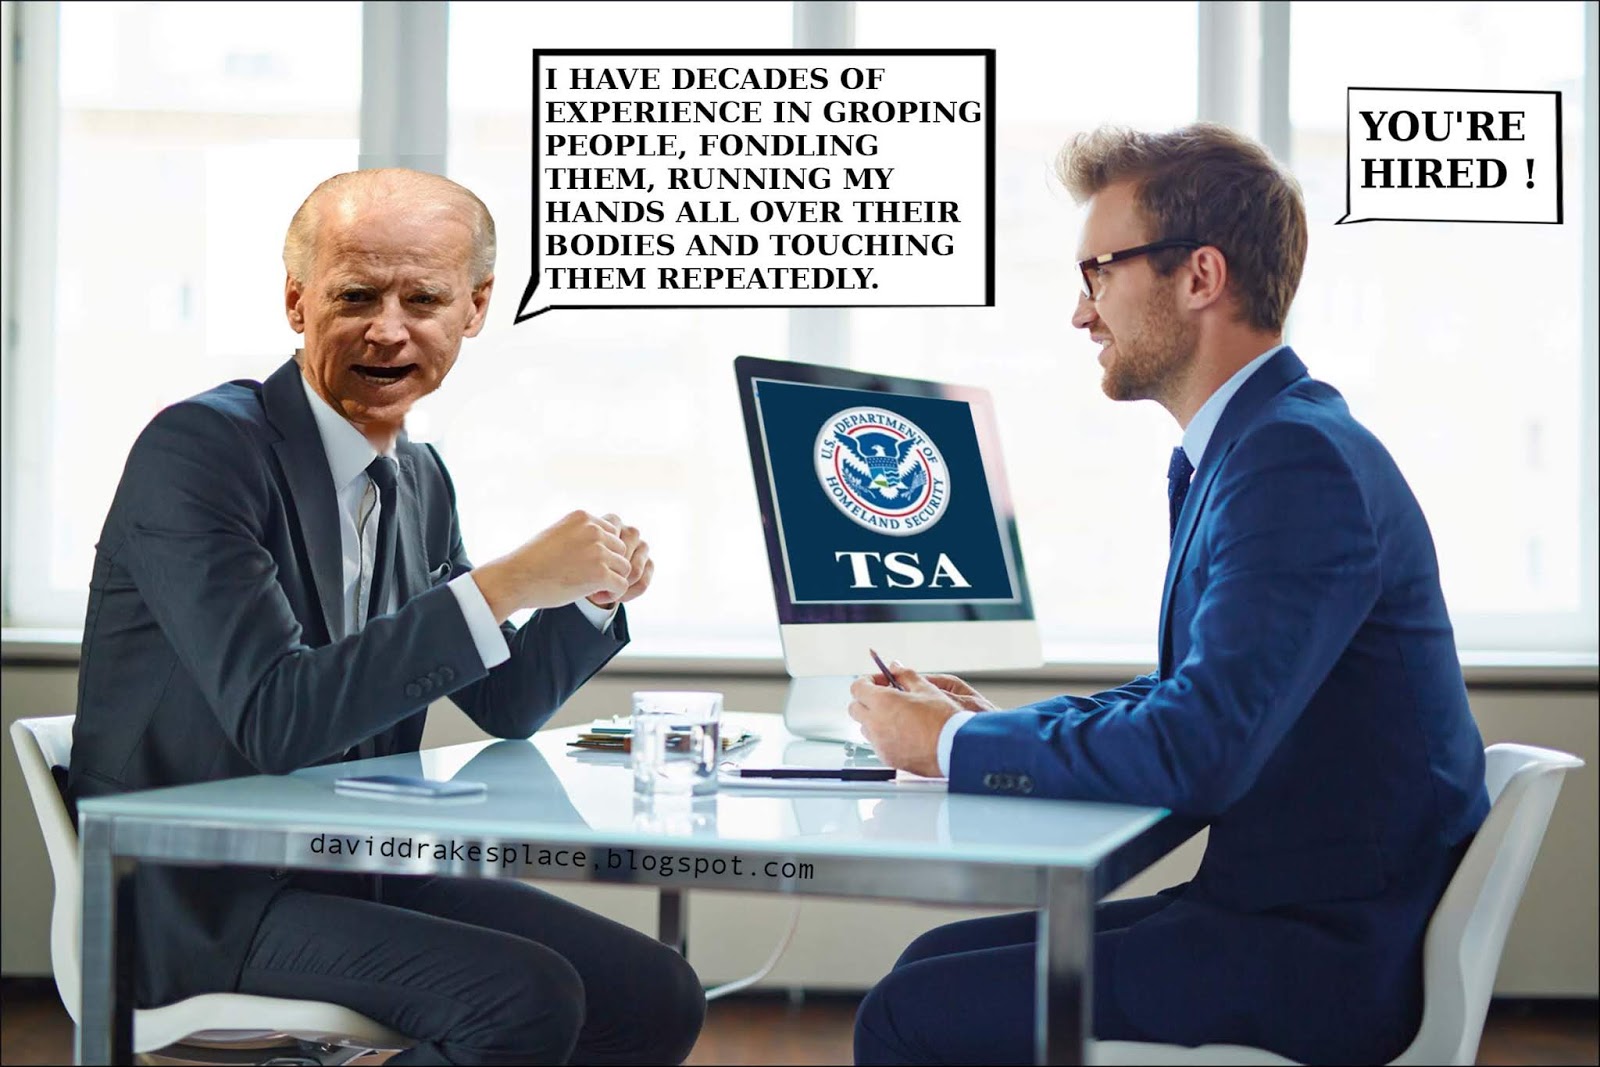 Biden hired by TSA